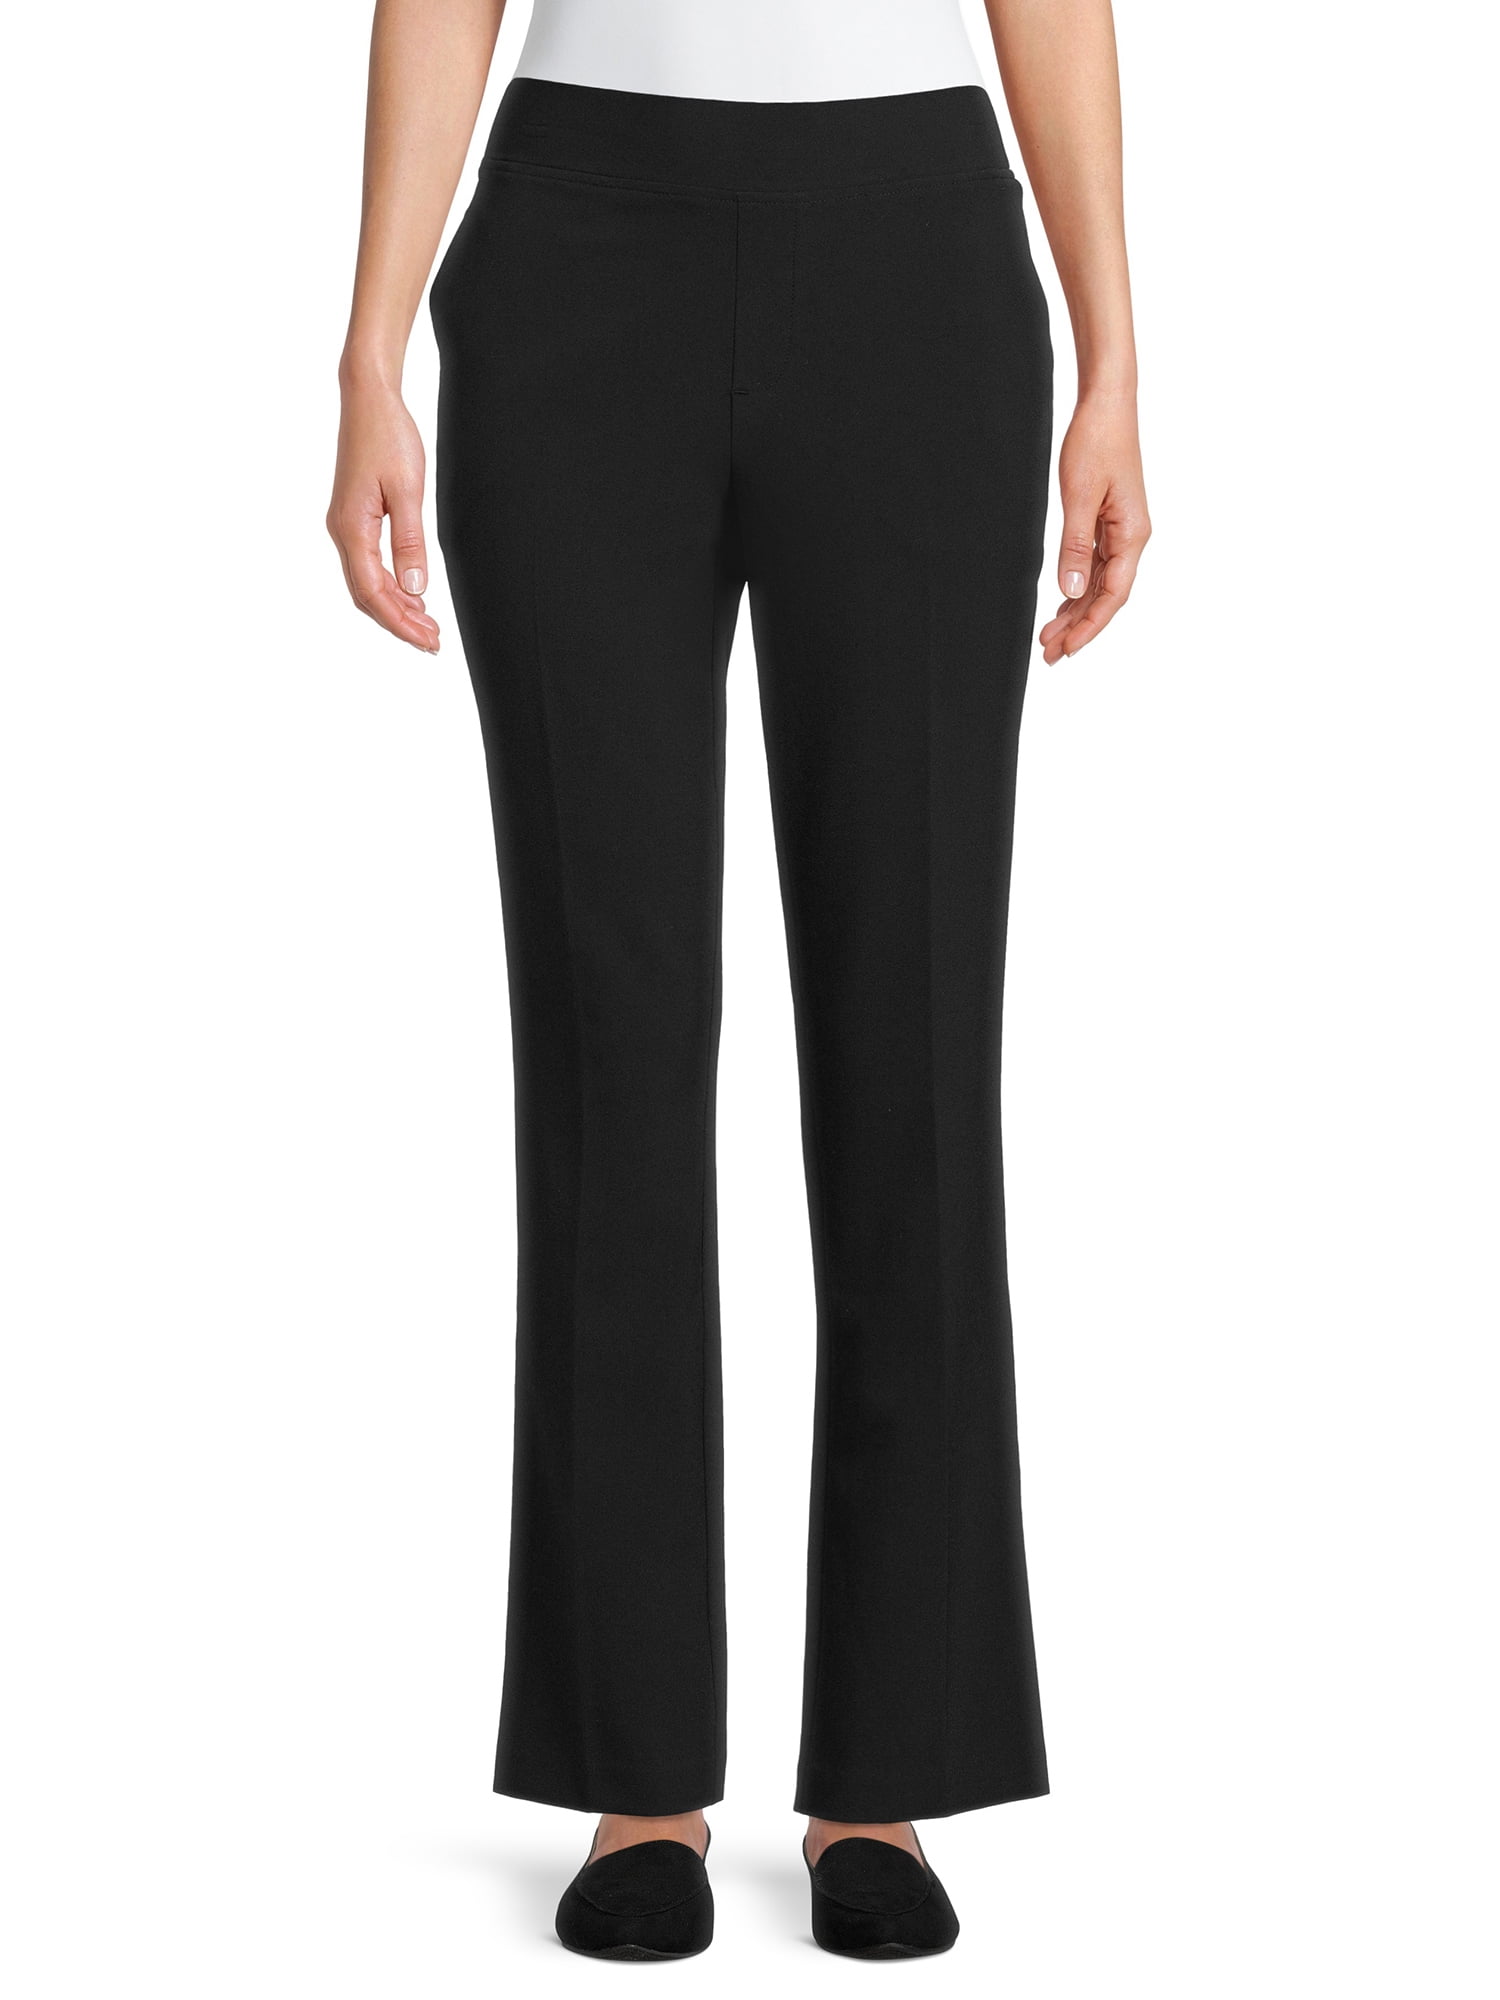 XXL Zipper Tailored Pants - Women - Ready-to-Wear